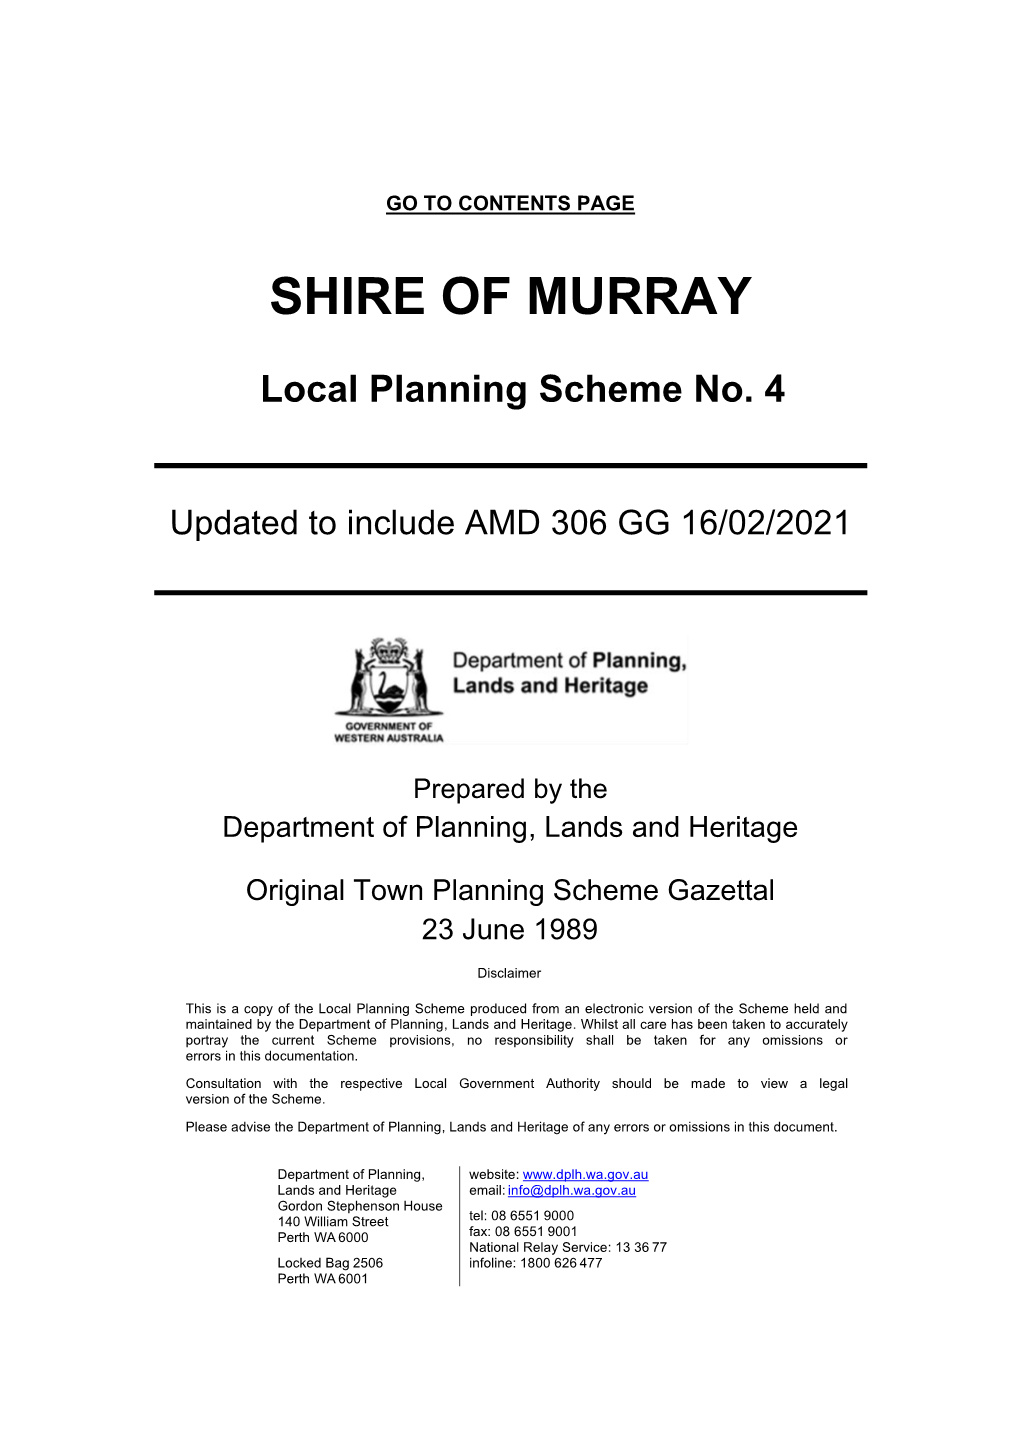 Murray Scheme Text 3.9 MB